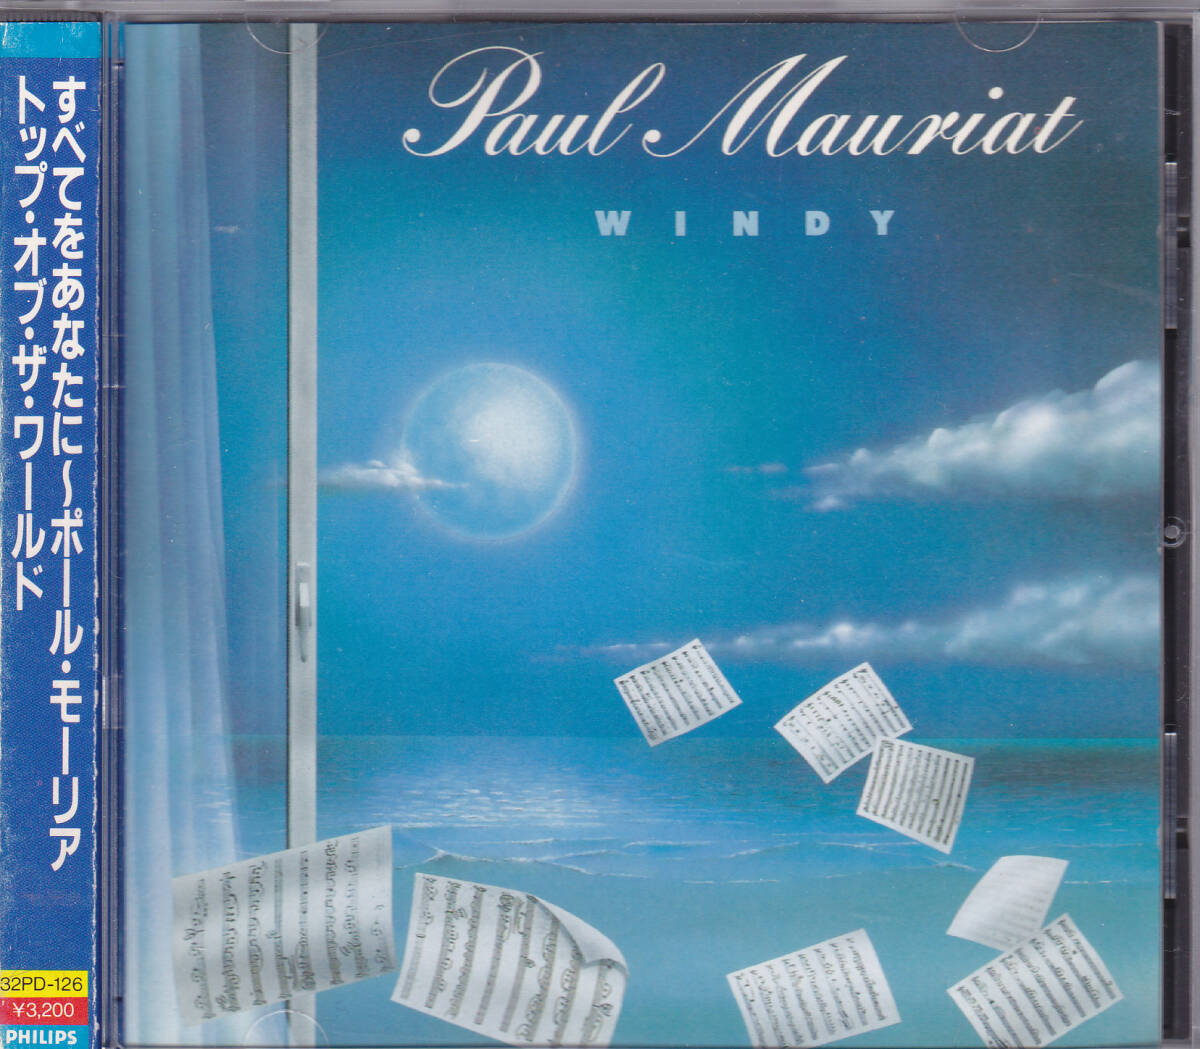 CD ポール・モーリア - すべてをあなたに トップ・オブ・ザ・ワールド - 旧規格 32PD-126 税表記なし 巻込帯 折込帯 WINDY PAUL MAURIAT_画像1